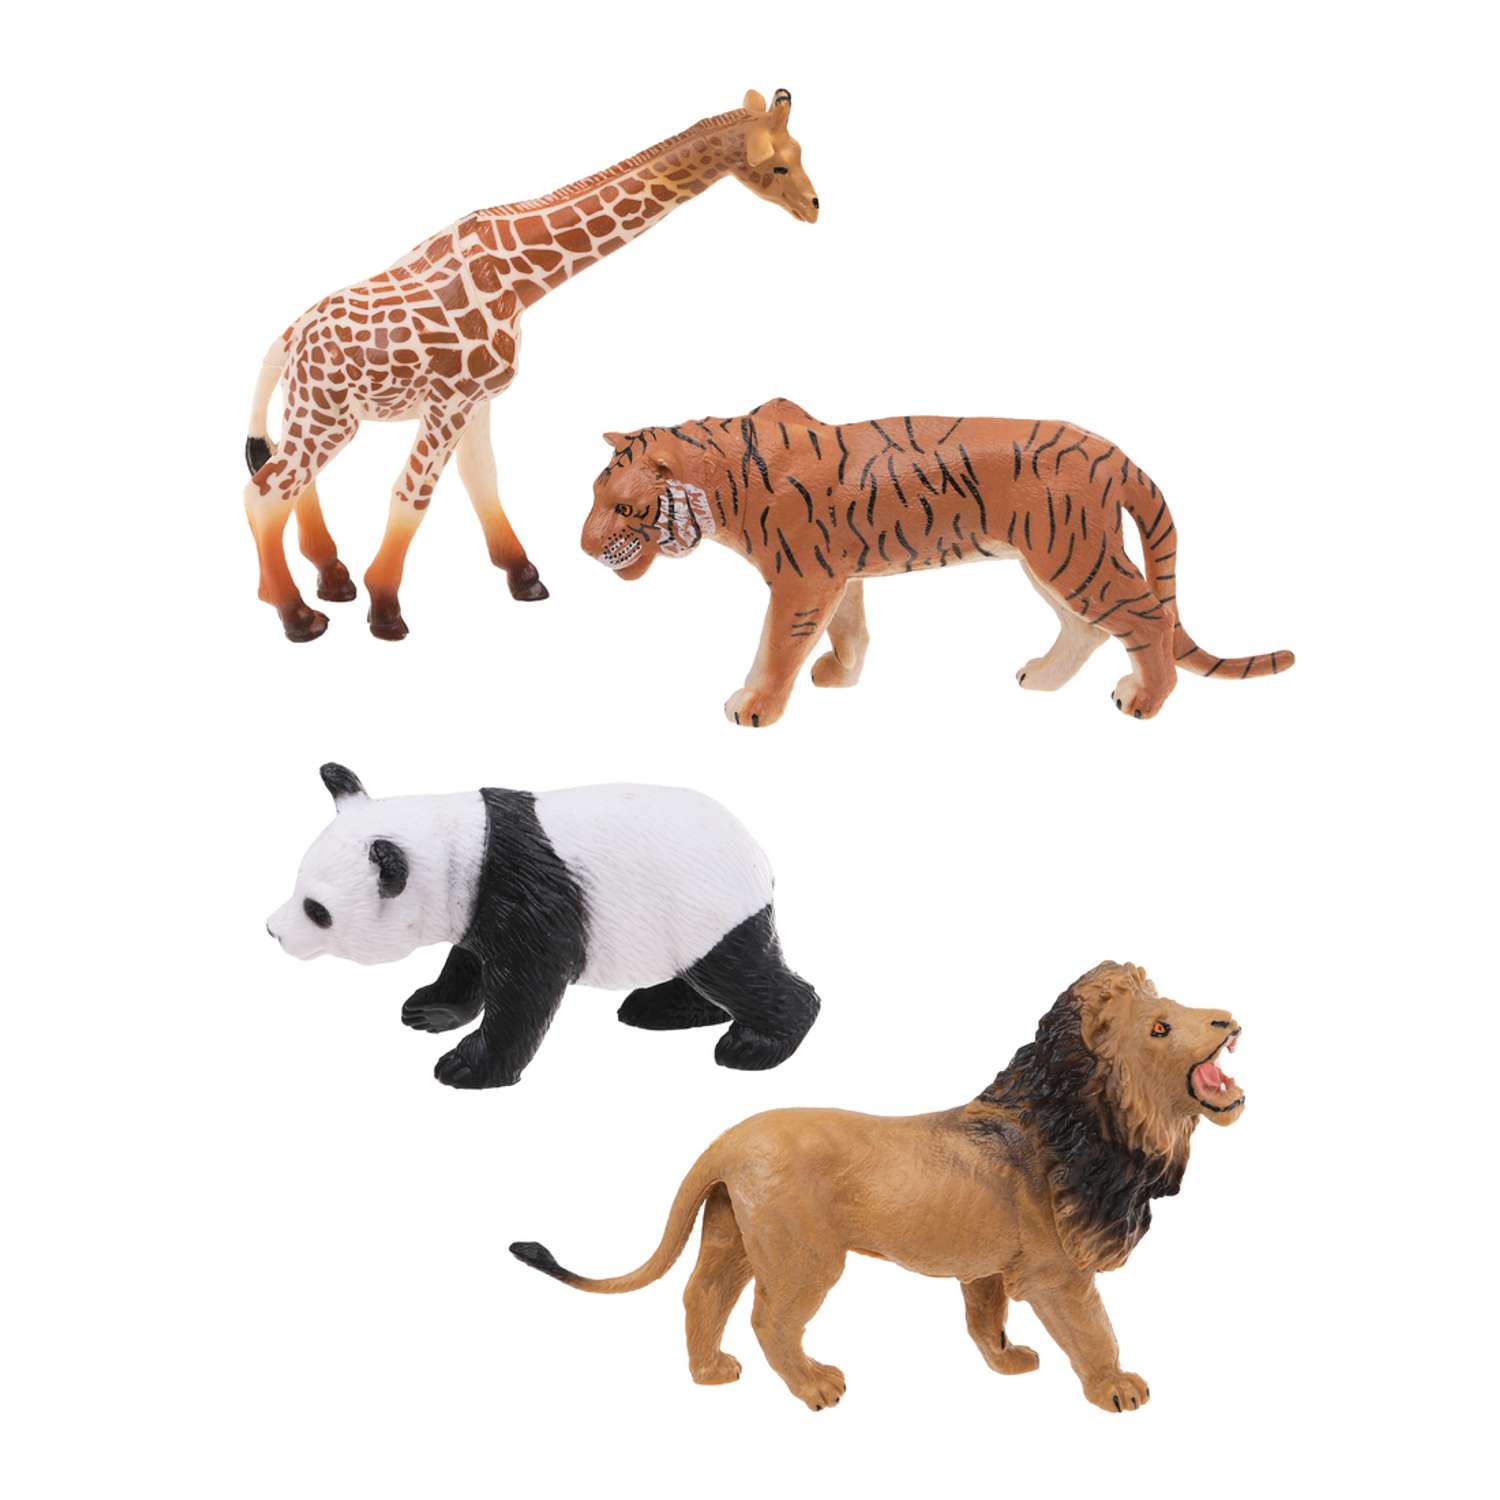 Фигурки животных Наша Игрушка набор игровой для развития и познания 4 шт - фото 2